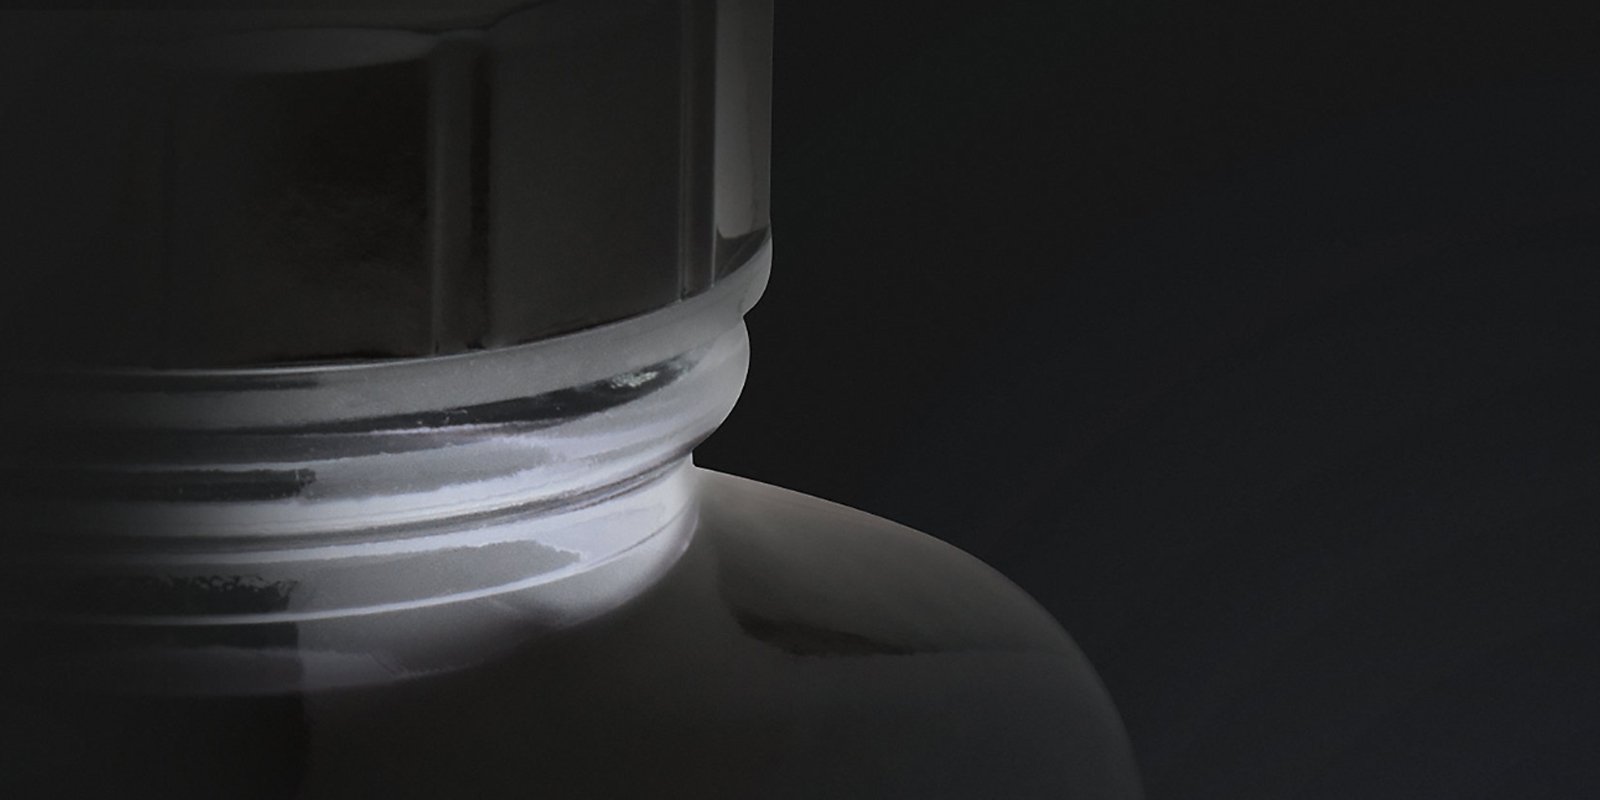 Closeup of an ink bottle cap.